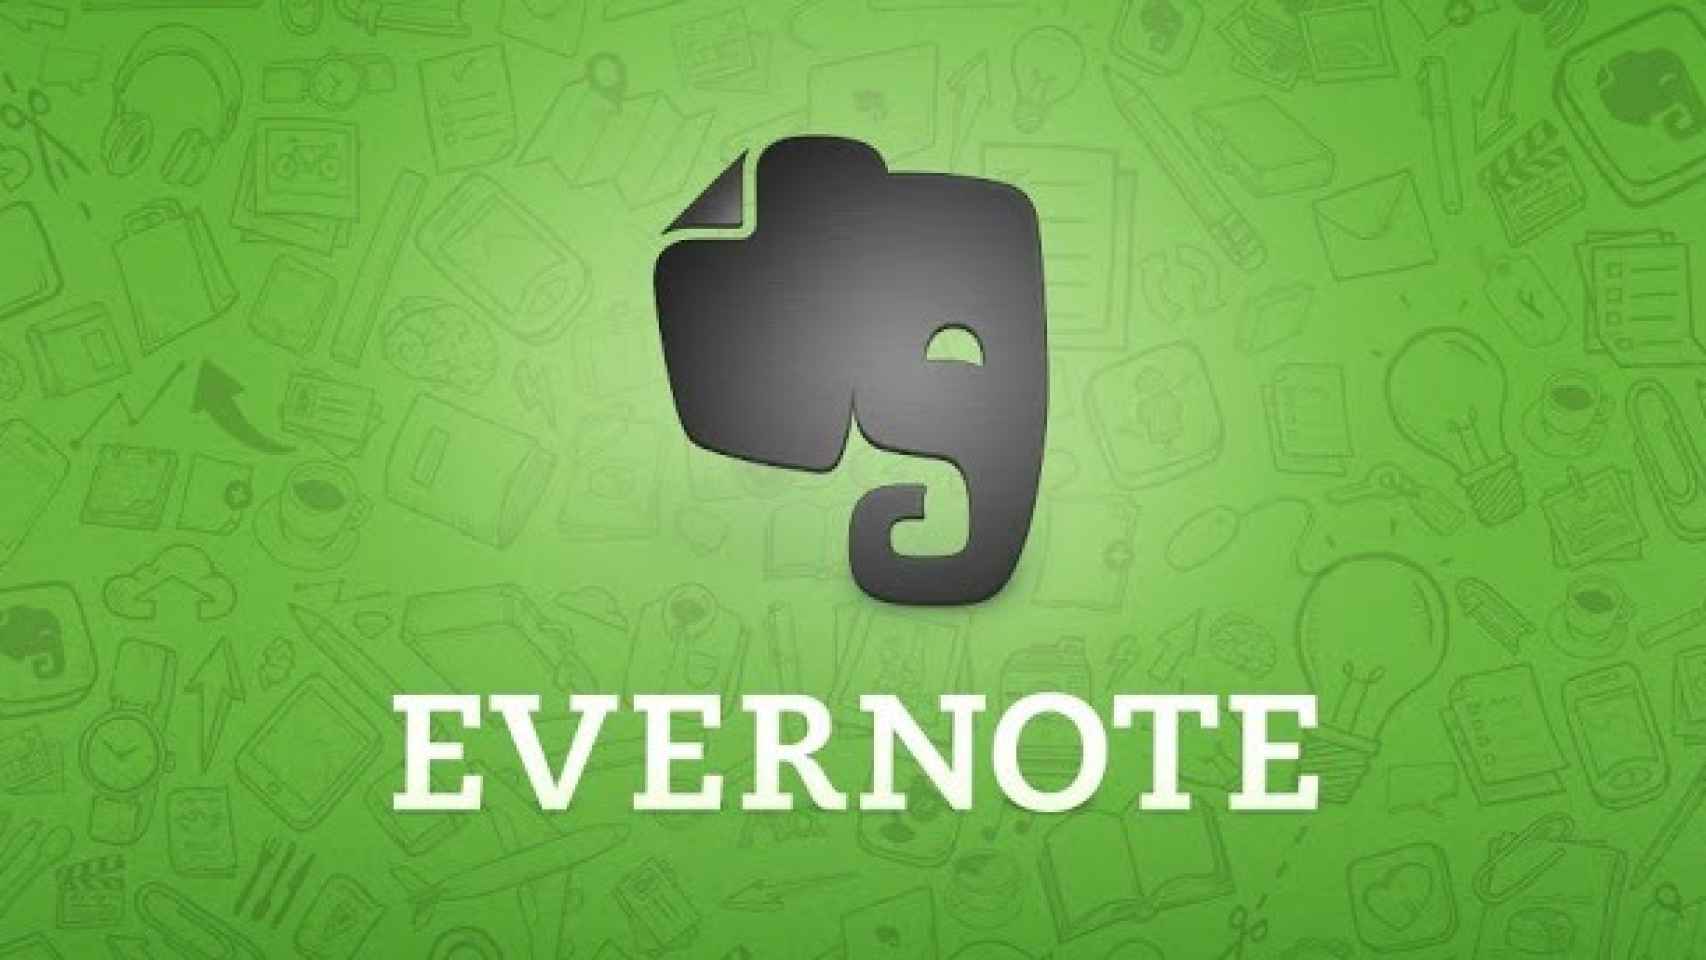 Evernote 5.8 actualizado ahora permite notas escritas a mano, destacar texto, cámara mejorada y más